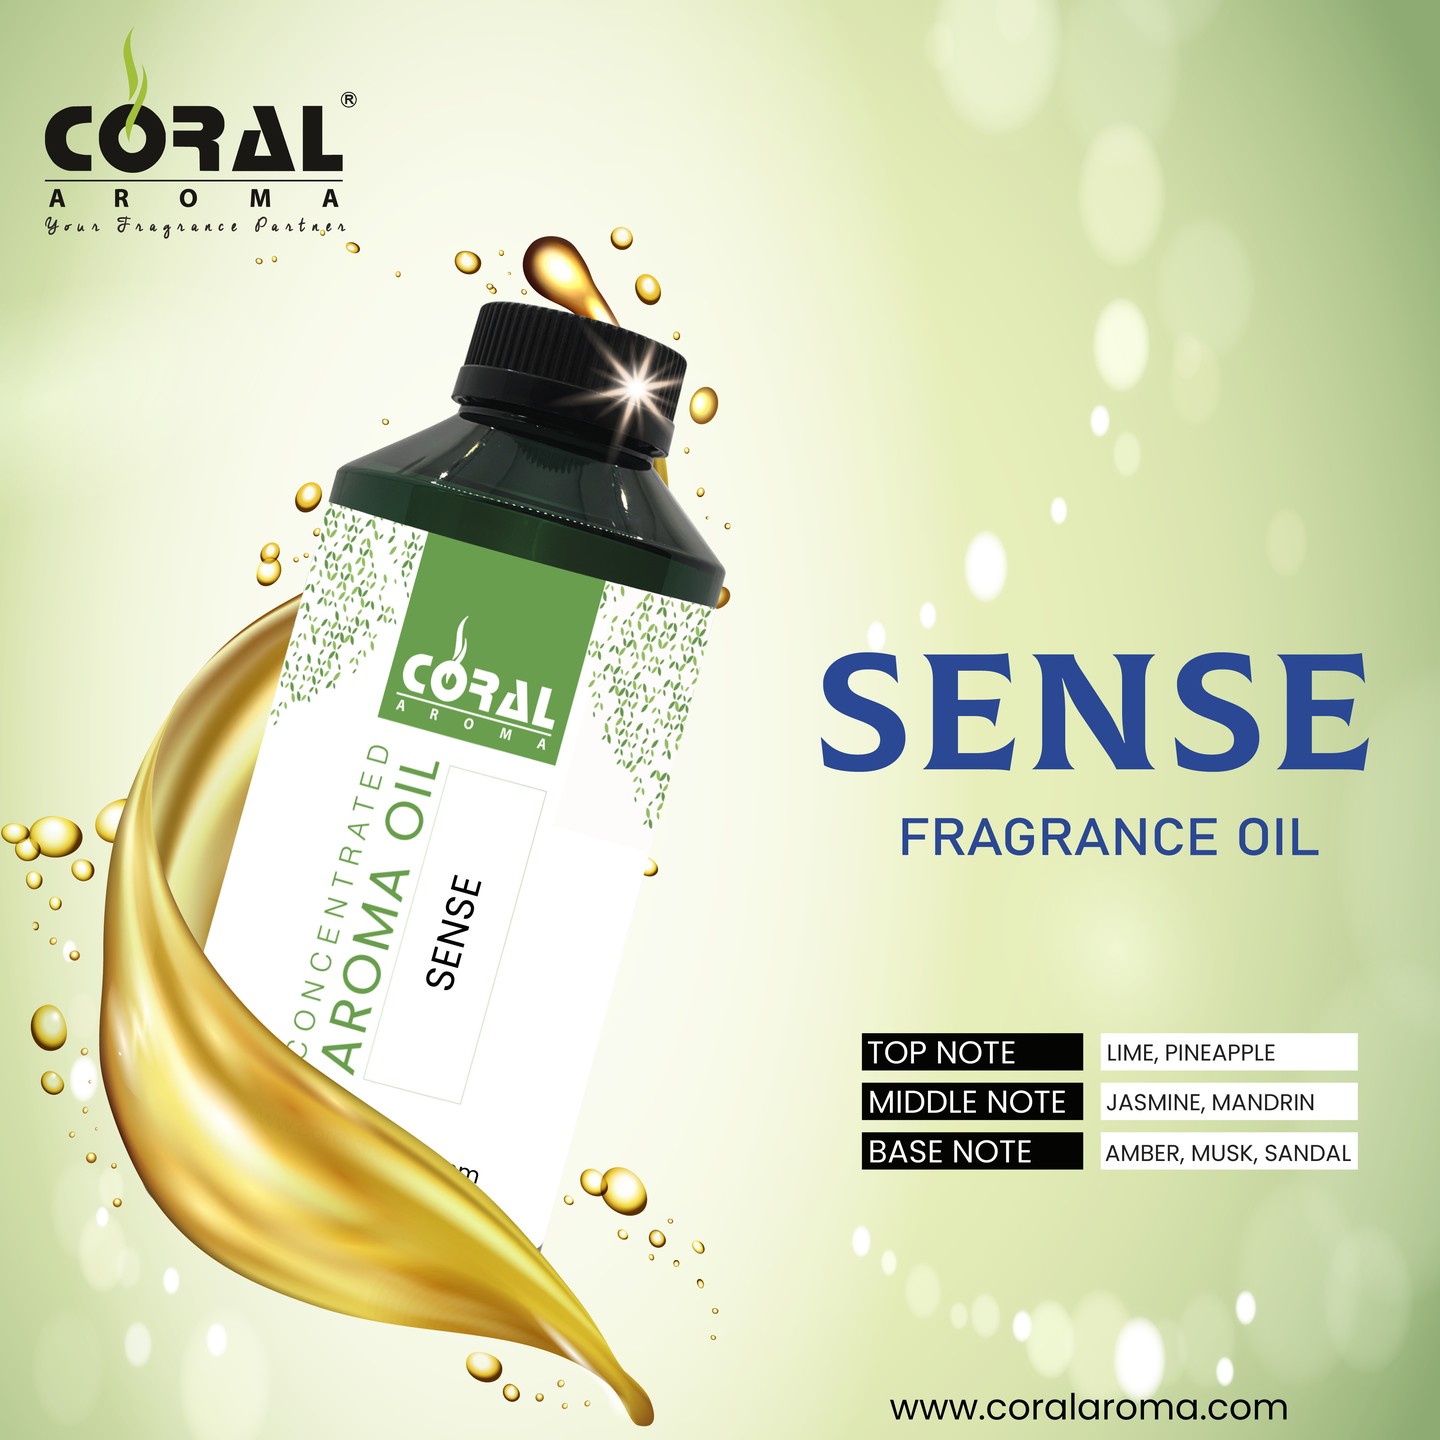 Make your Smell Sense feel good with our Sense Fragrance Oil.

Buy Now: https://www.coralaroma.com/product/sense/

#fragranceoil #diffuserfragrance #aromaoil #perfumeoil #dubai #uae